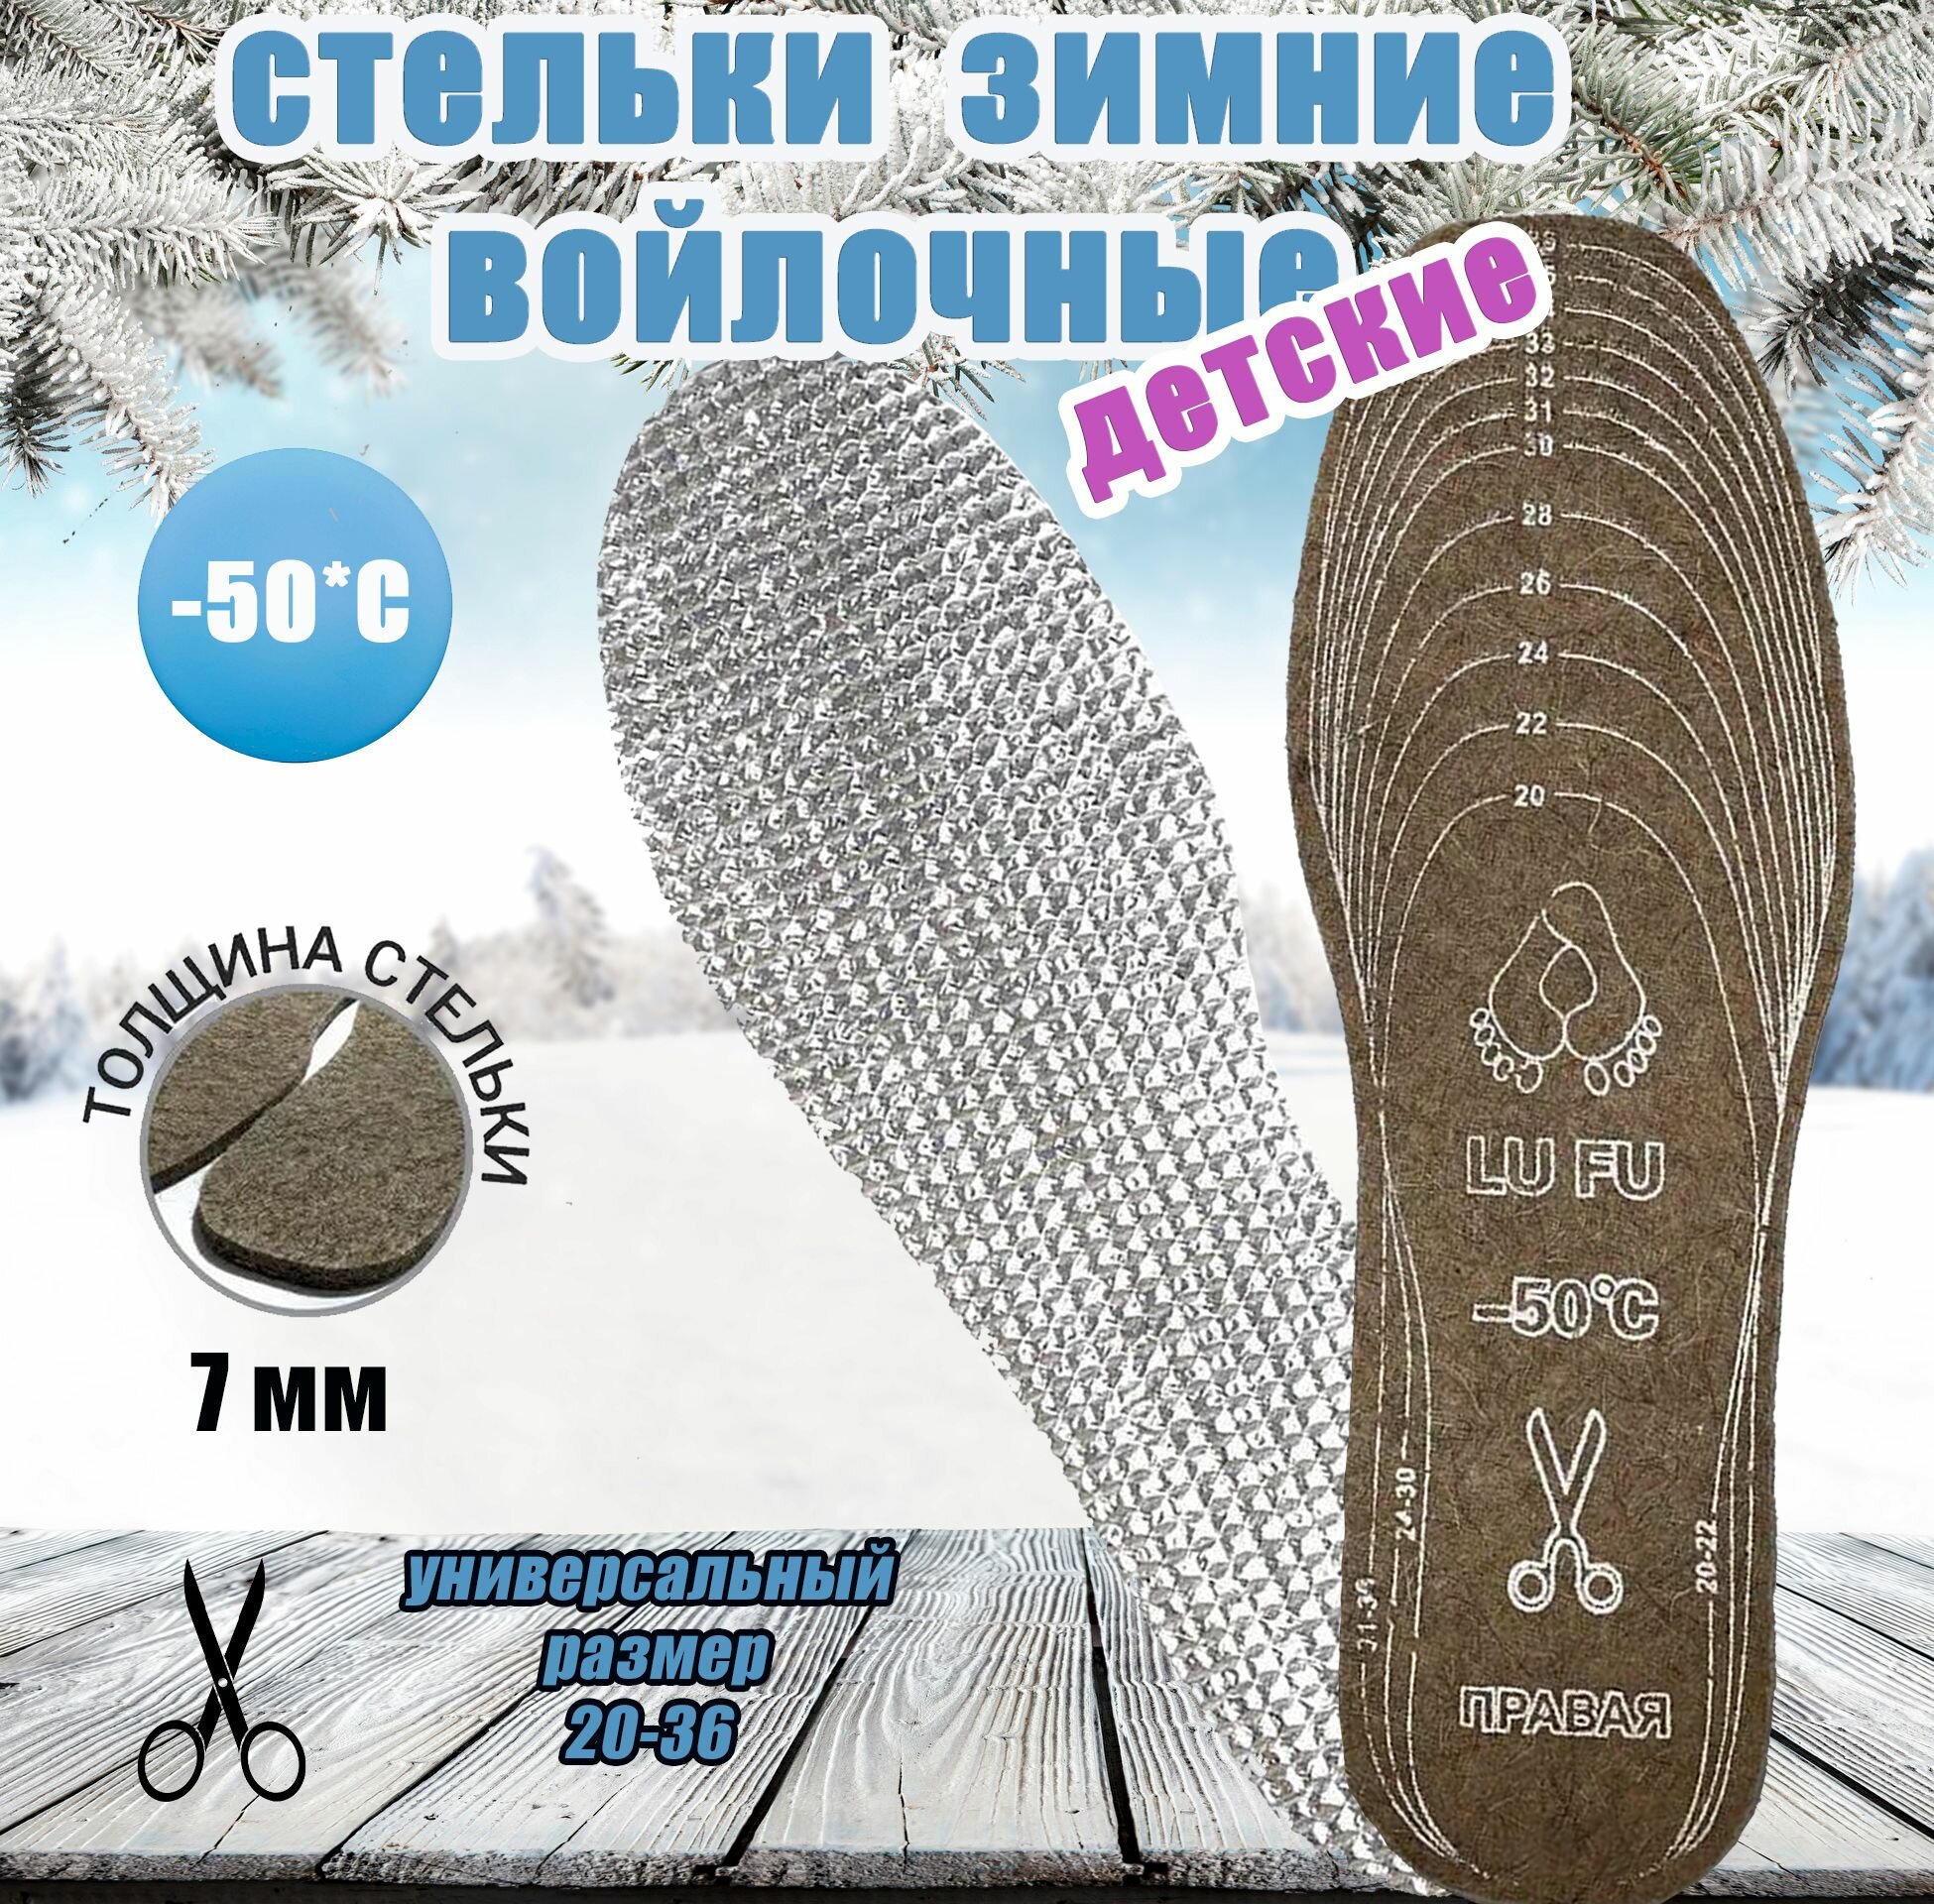 Стельки детские натуральные войлочные для обуви фольгированные, теплые зимние. Размер 20-36